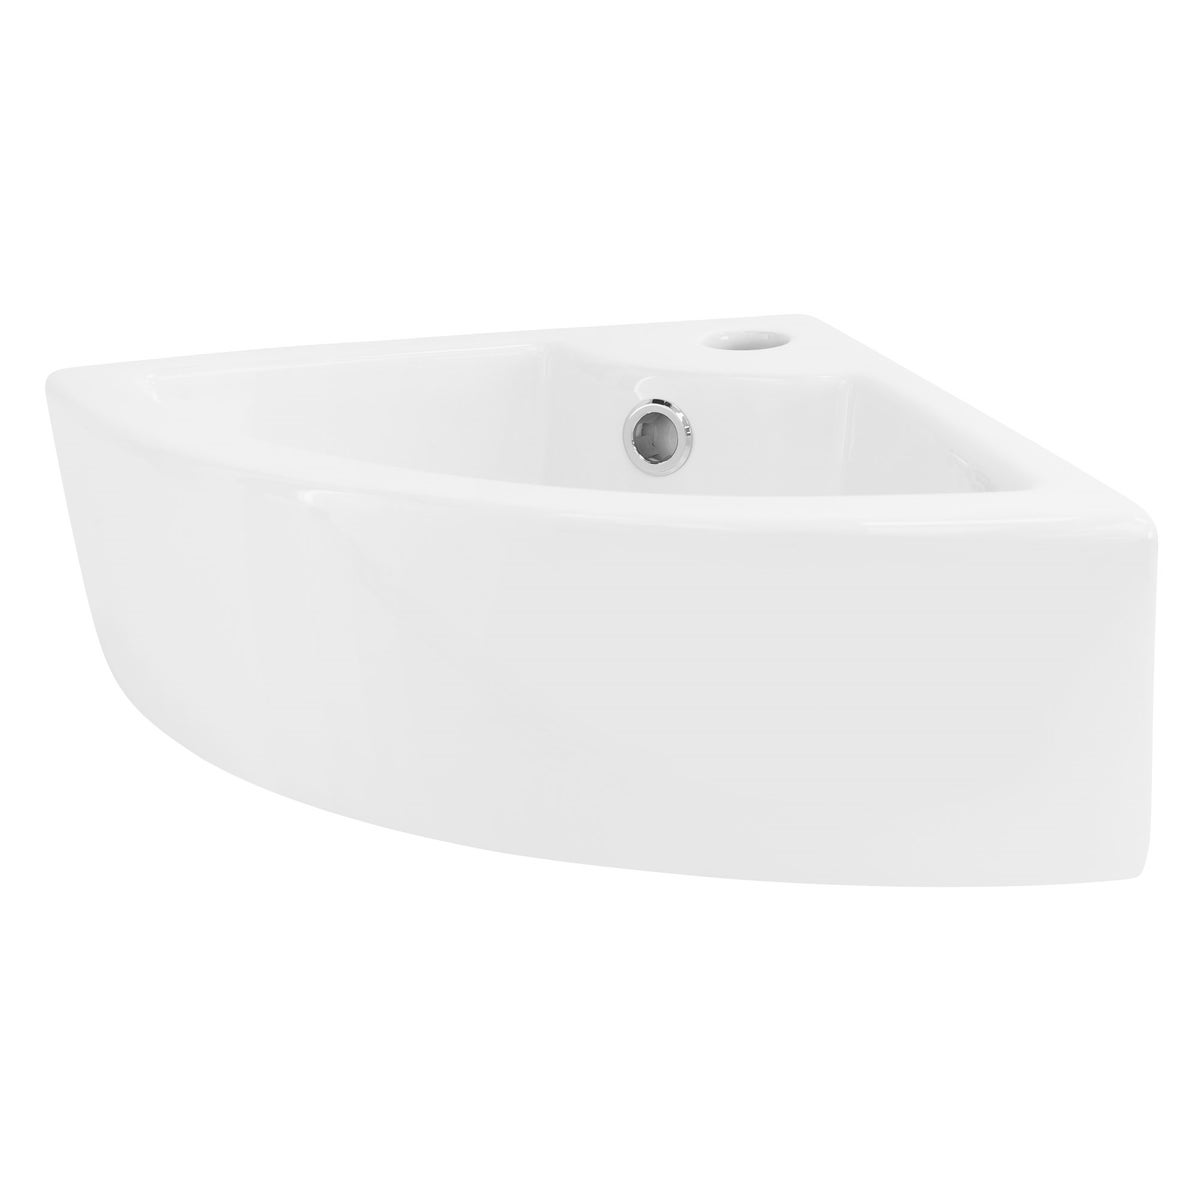 ML-Design Waschbecken Eck aus Keramik in Weiß, 46 x 33 x 13 cm, Eckig, Wandmontage/Aufsatzwaschbecken, Eckwaschbecken mit Überlauf, Hängewaschbecken Waschtisch Waschschale Waschplatz Handwaschbecken